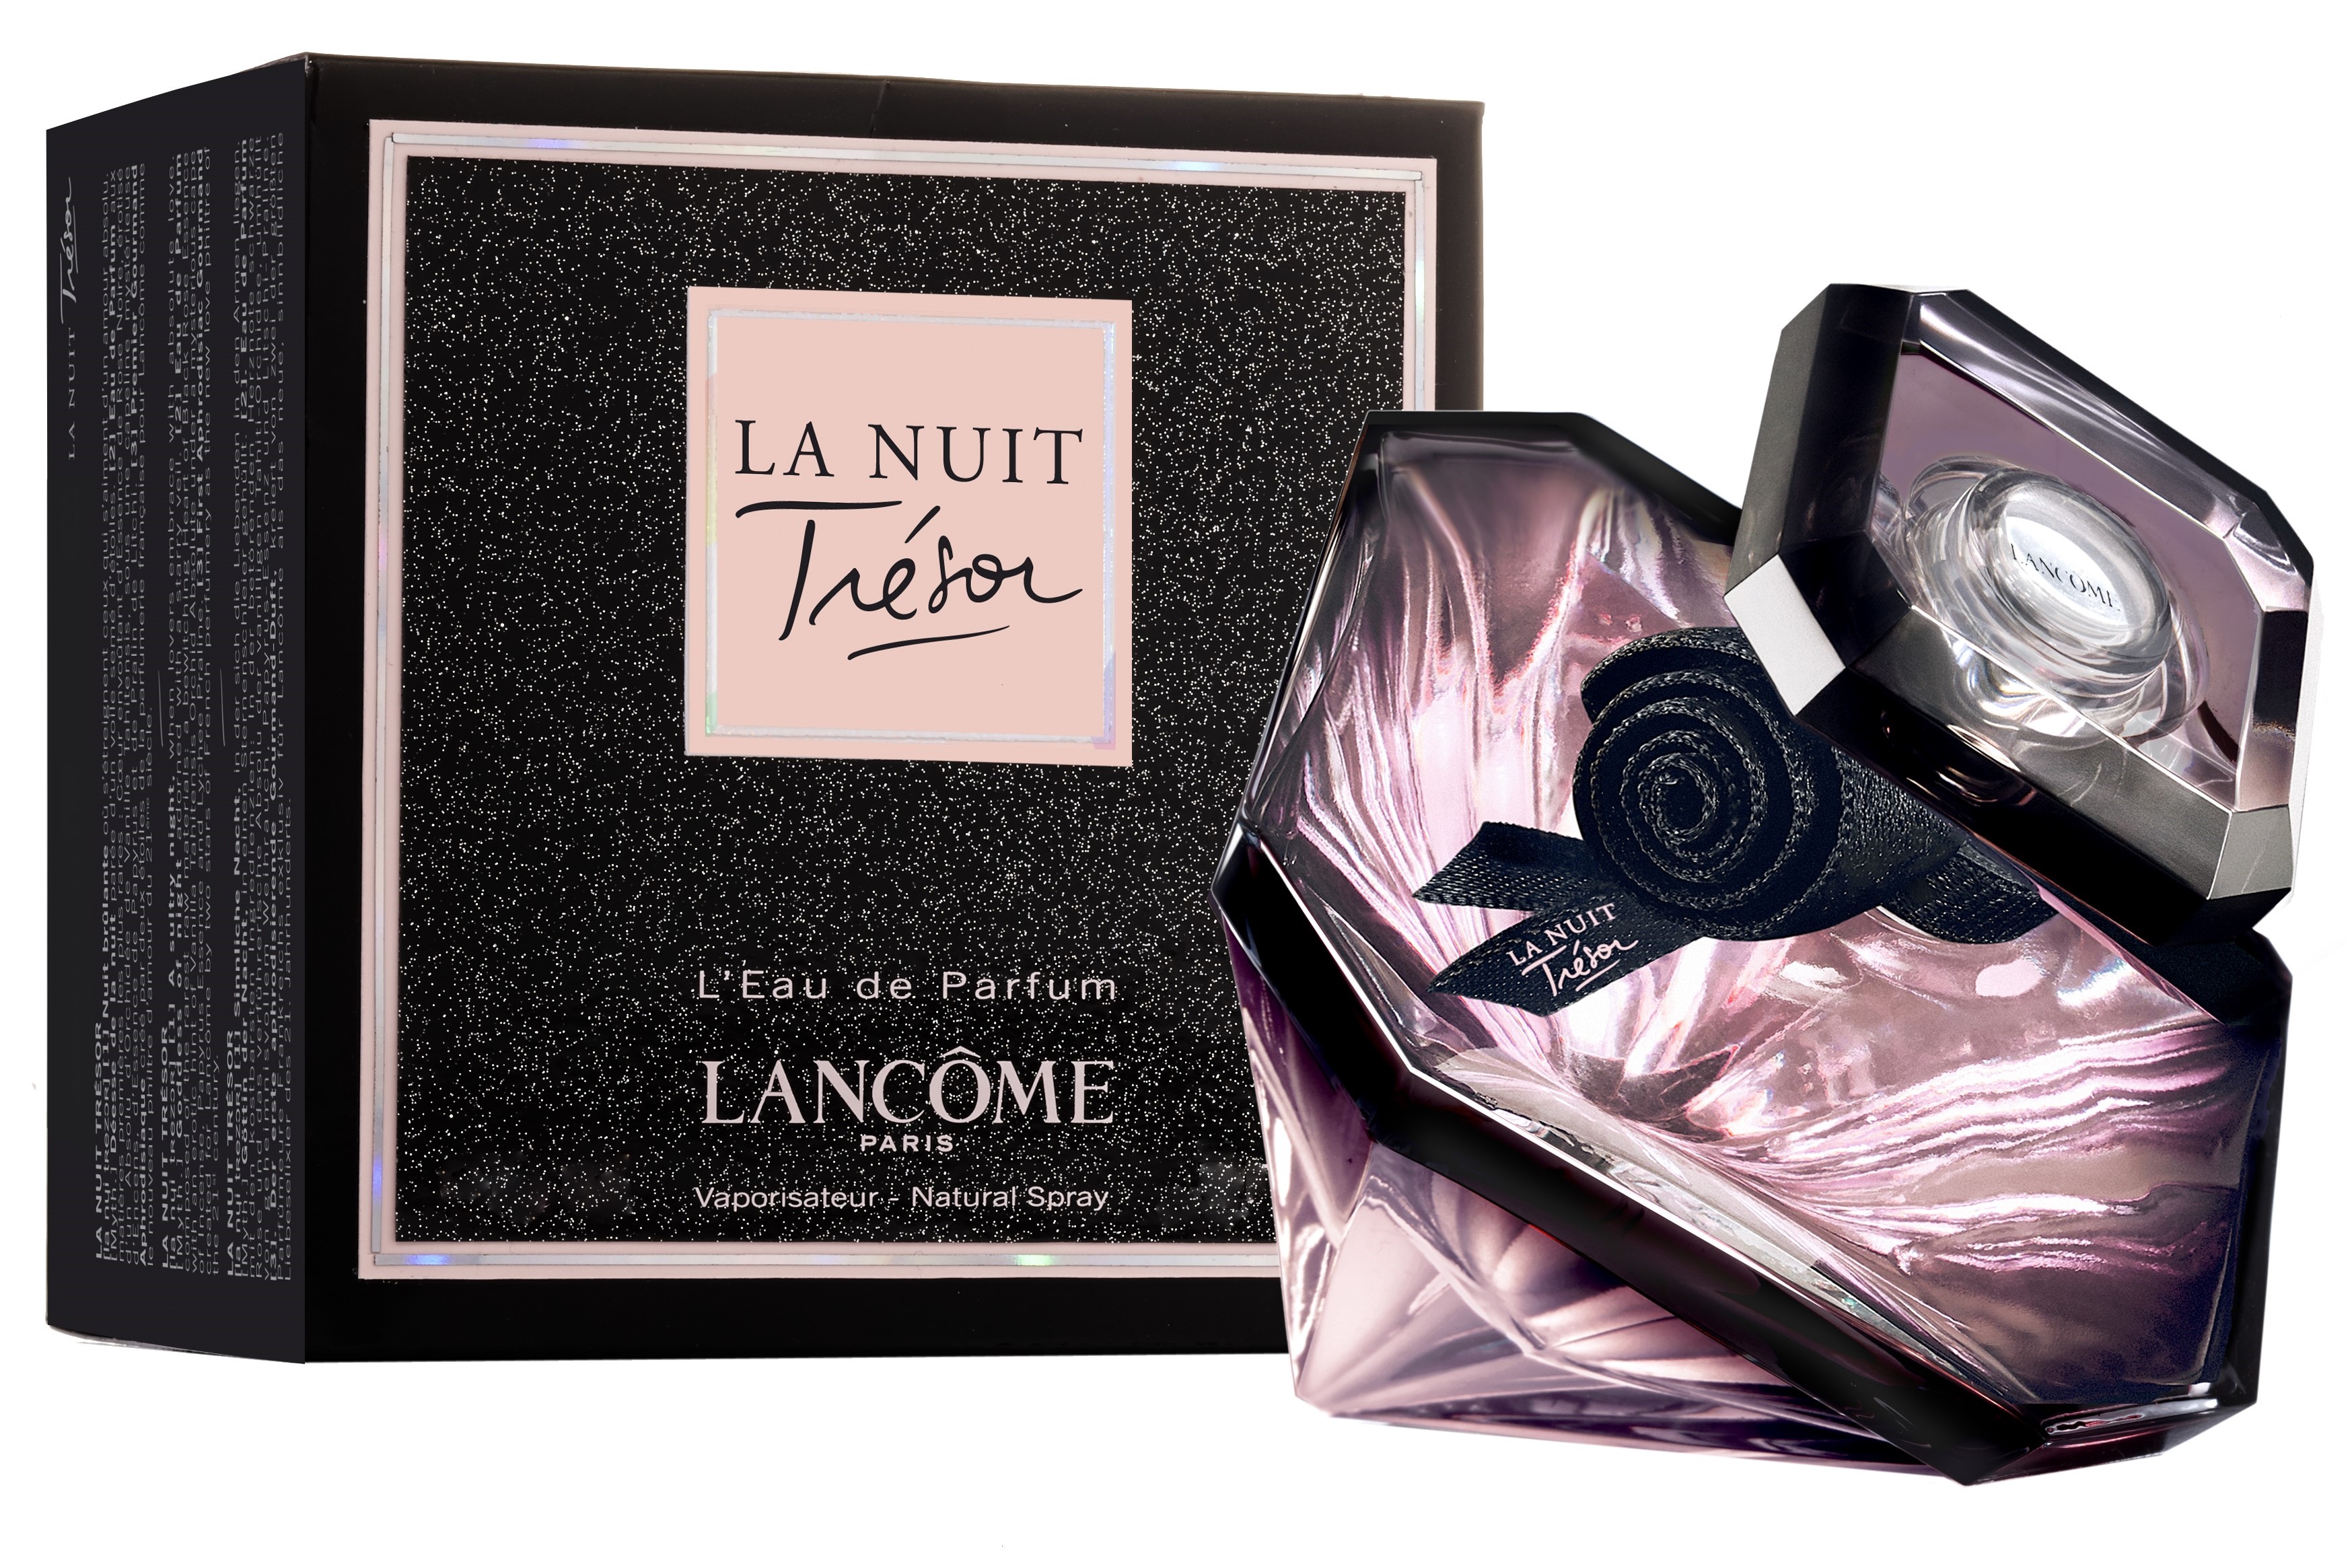 Купить Парфюмерная вода Lancome, Lancome Tresor La Nuit Eau De Parfum 50.0ml, Франция